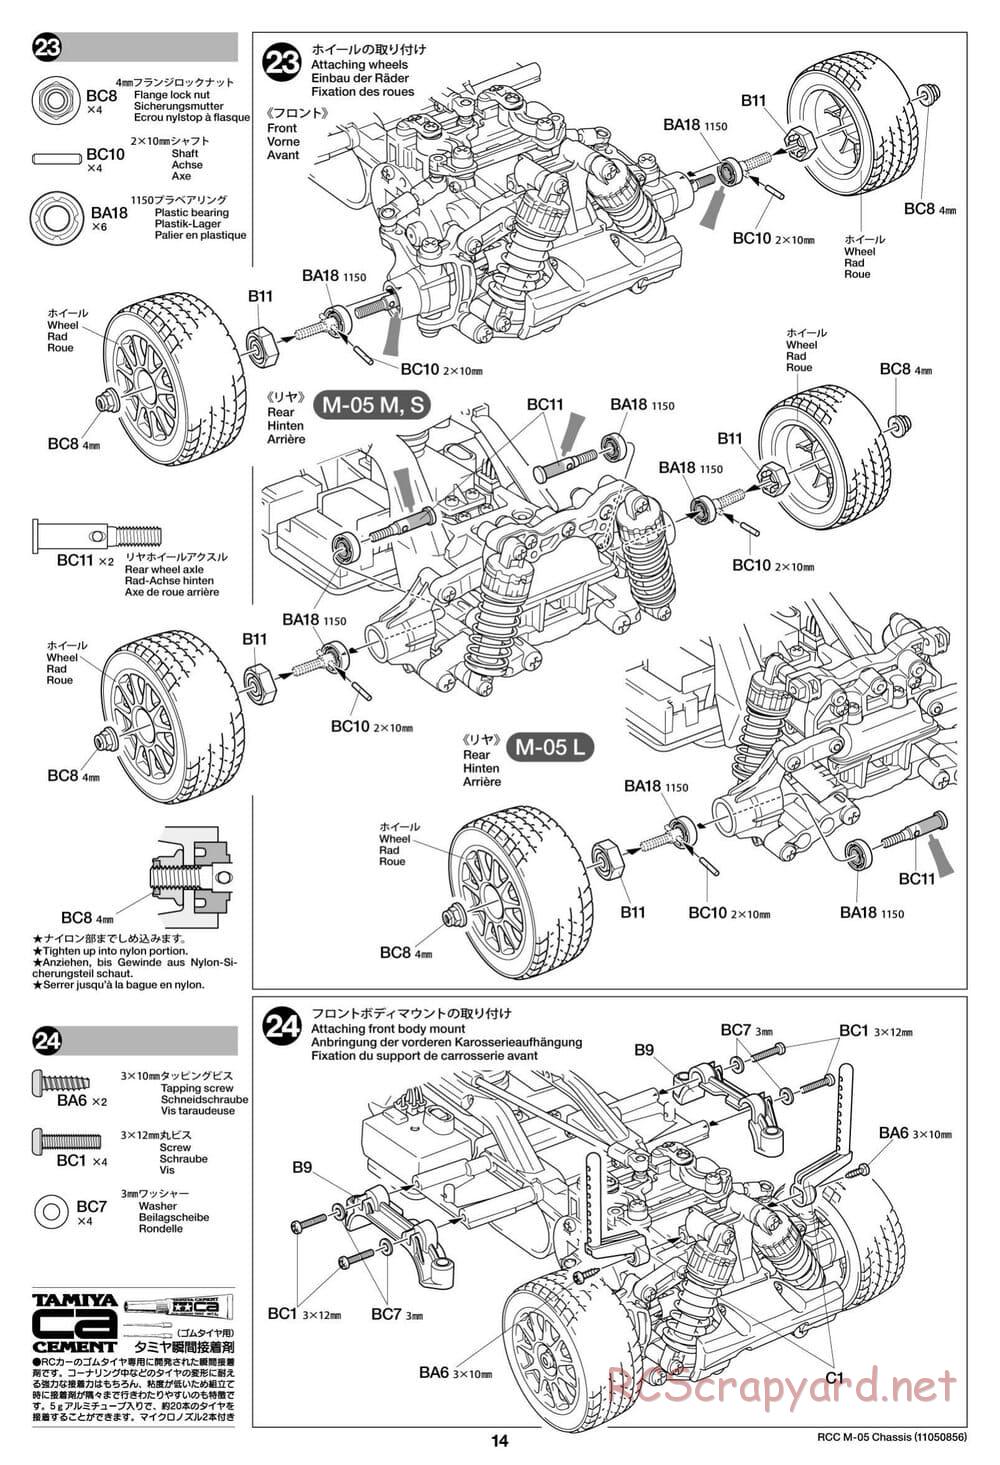 Tamiya - M-05 Chassis - Manual - Page 14